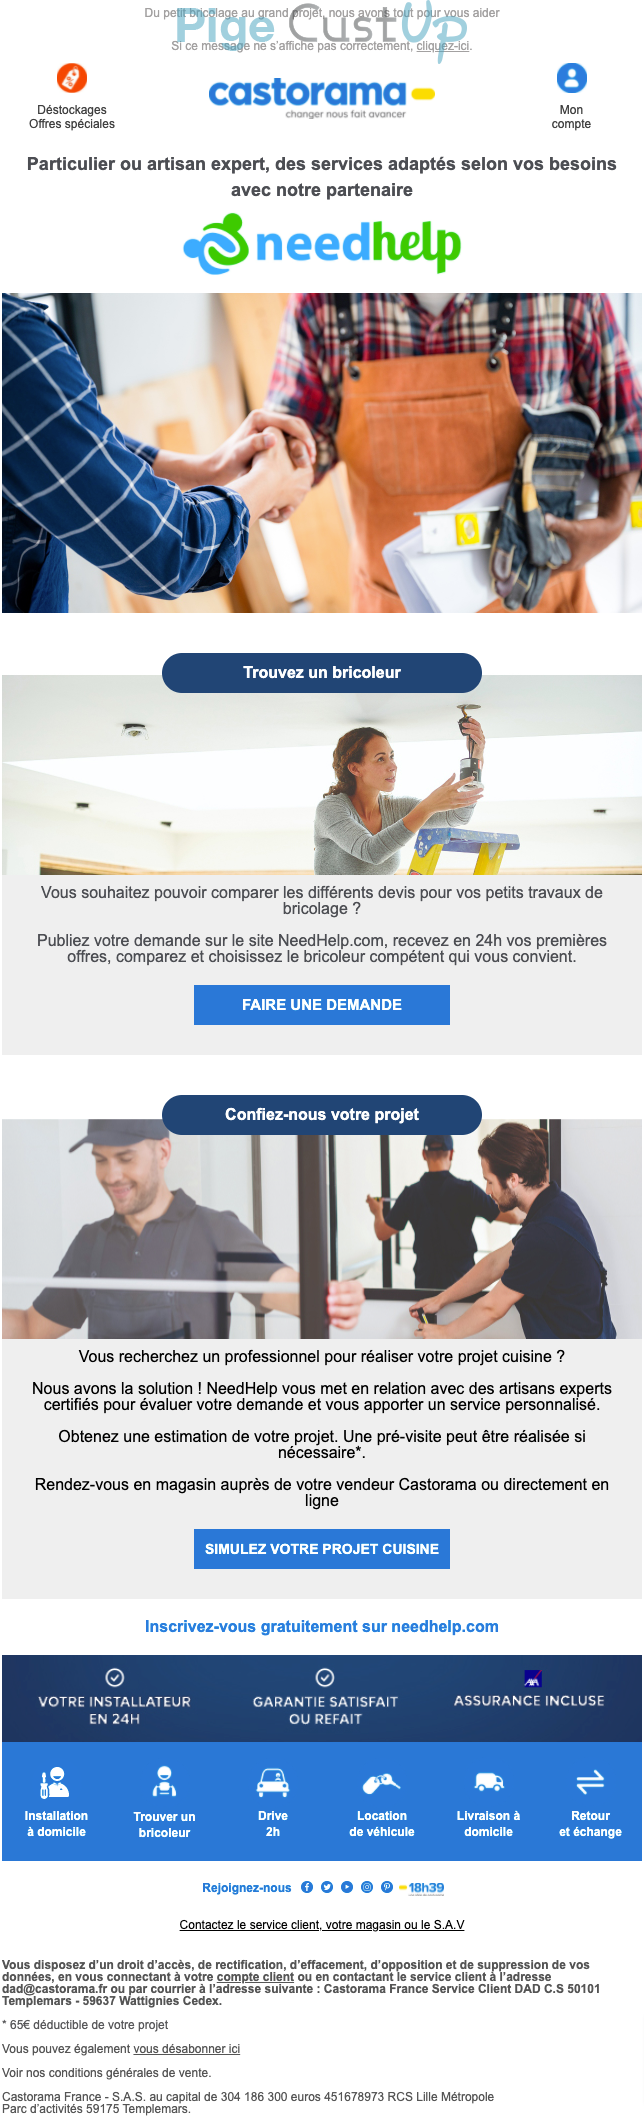 Exemple de Type de media  e-mailing - Castorama - Marketing marque - Communication Services - Nouveaux Services